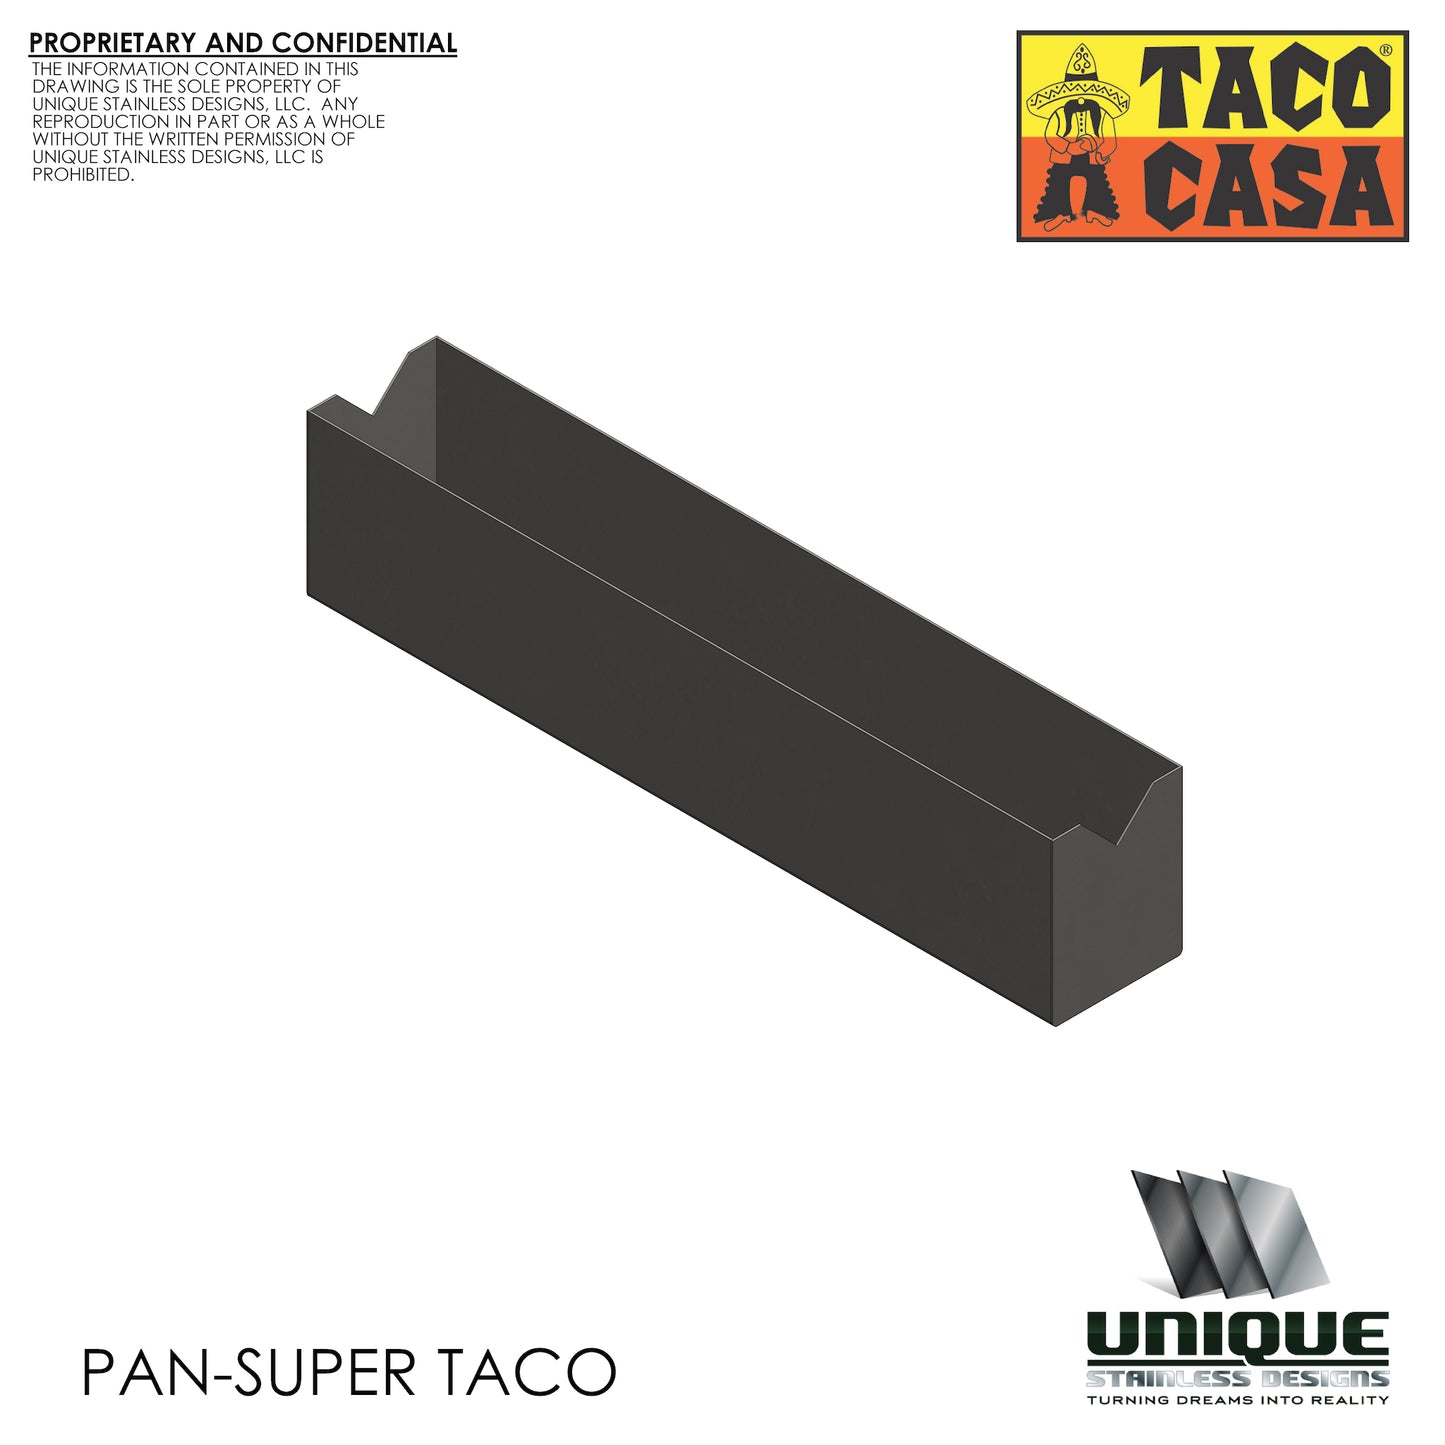 Pan-Super Taco